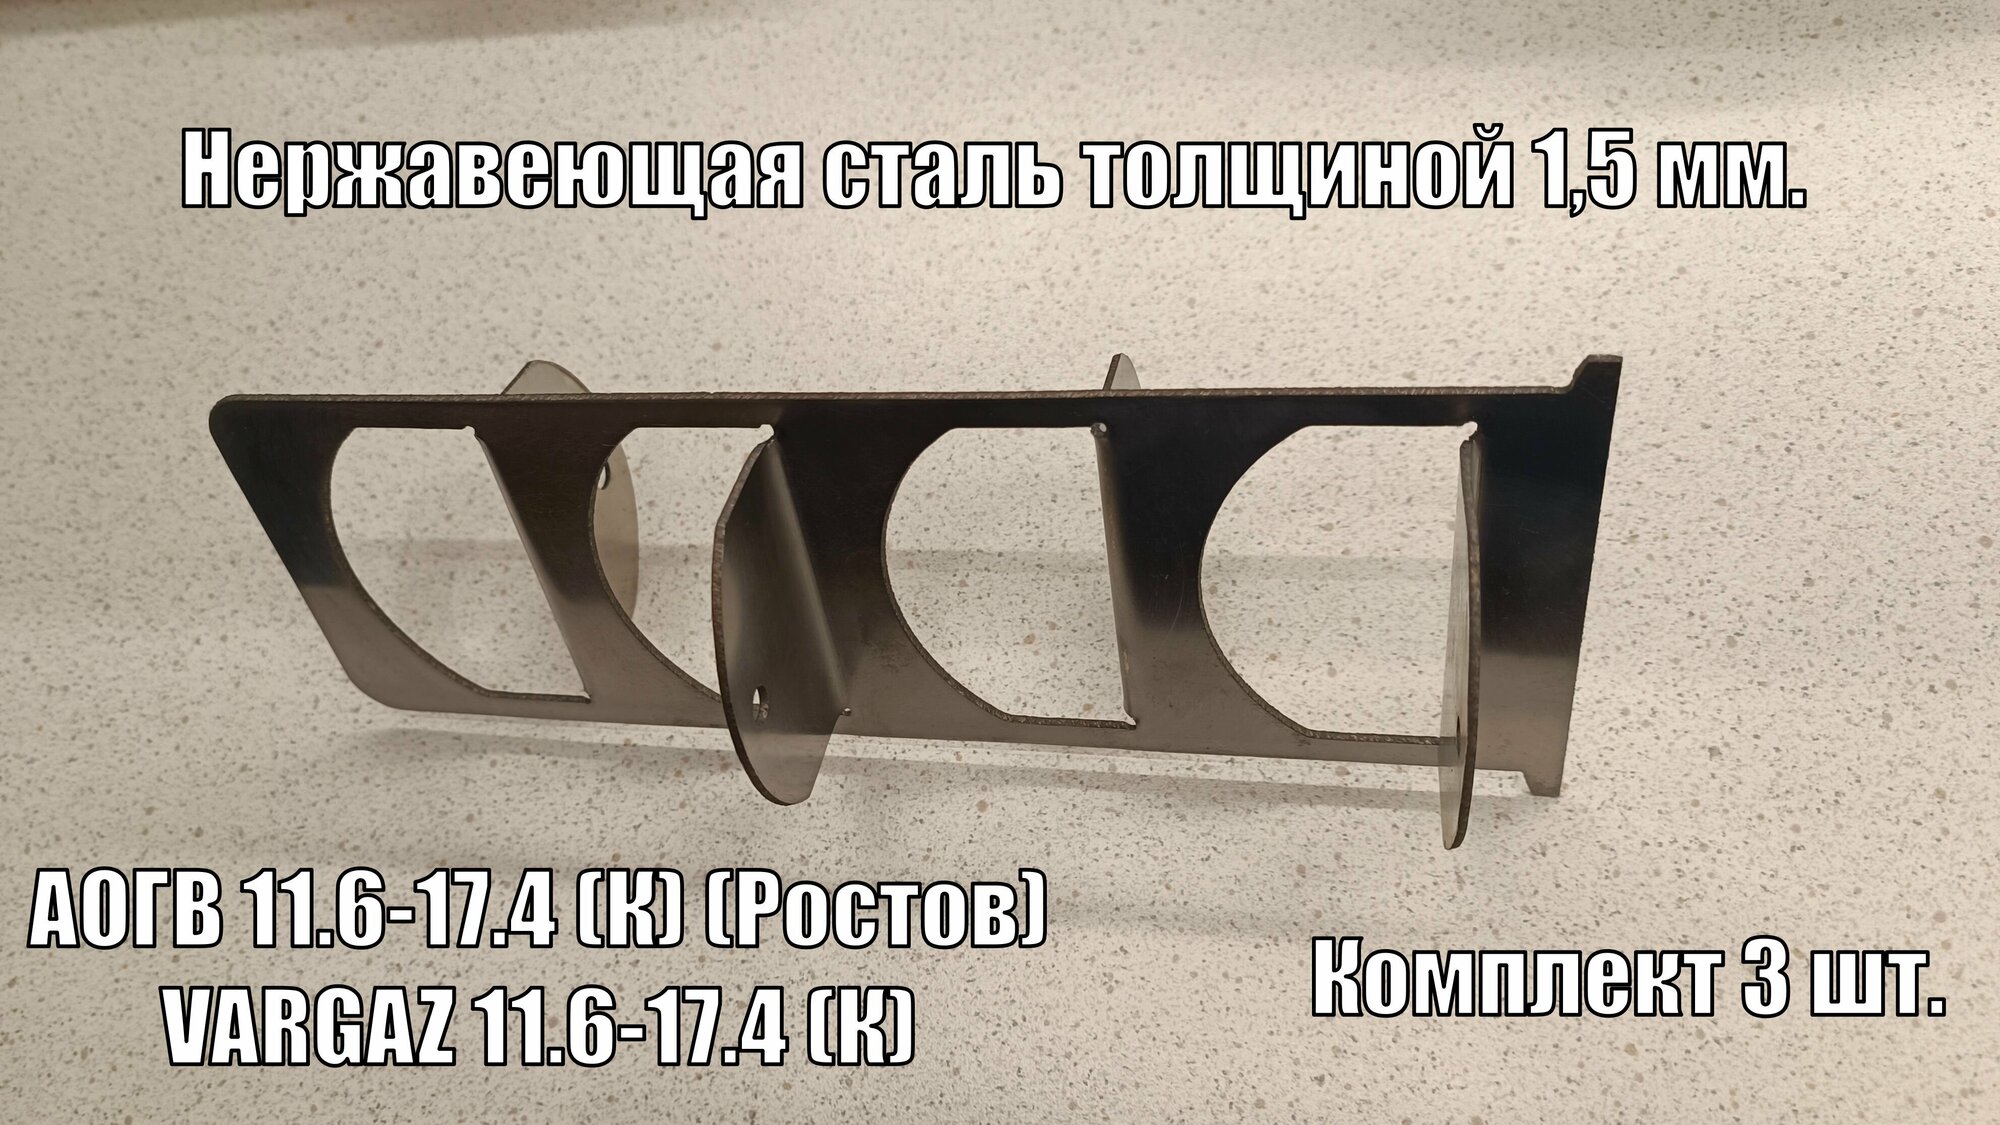 Турбулизатор из нержавейки для котла АОГВ 11.6 (Ростов). Комплект 3 шт.